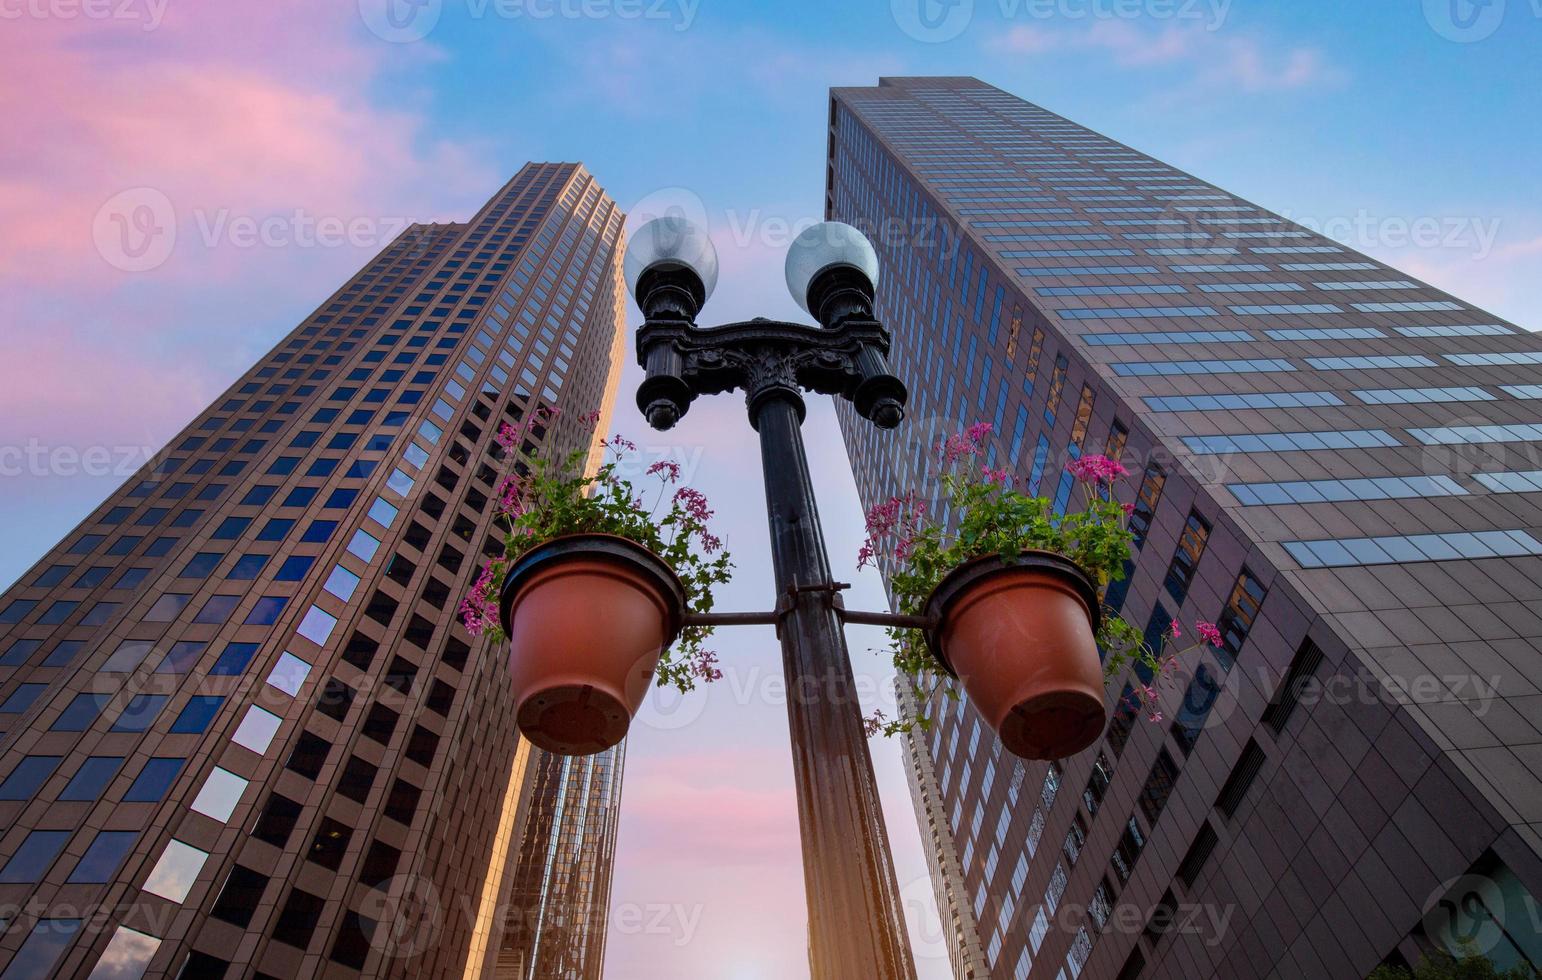 usa, malerische stadt skyline und wolkenkratzer im finanzviertel von boston im stadtzentrum foto